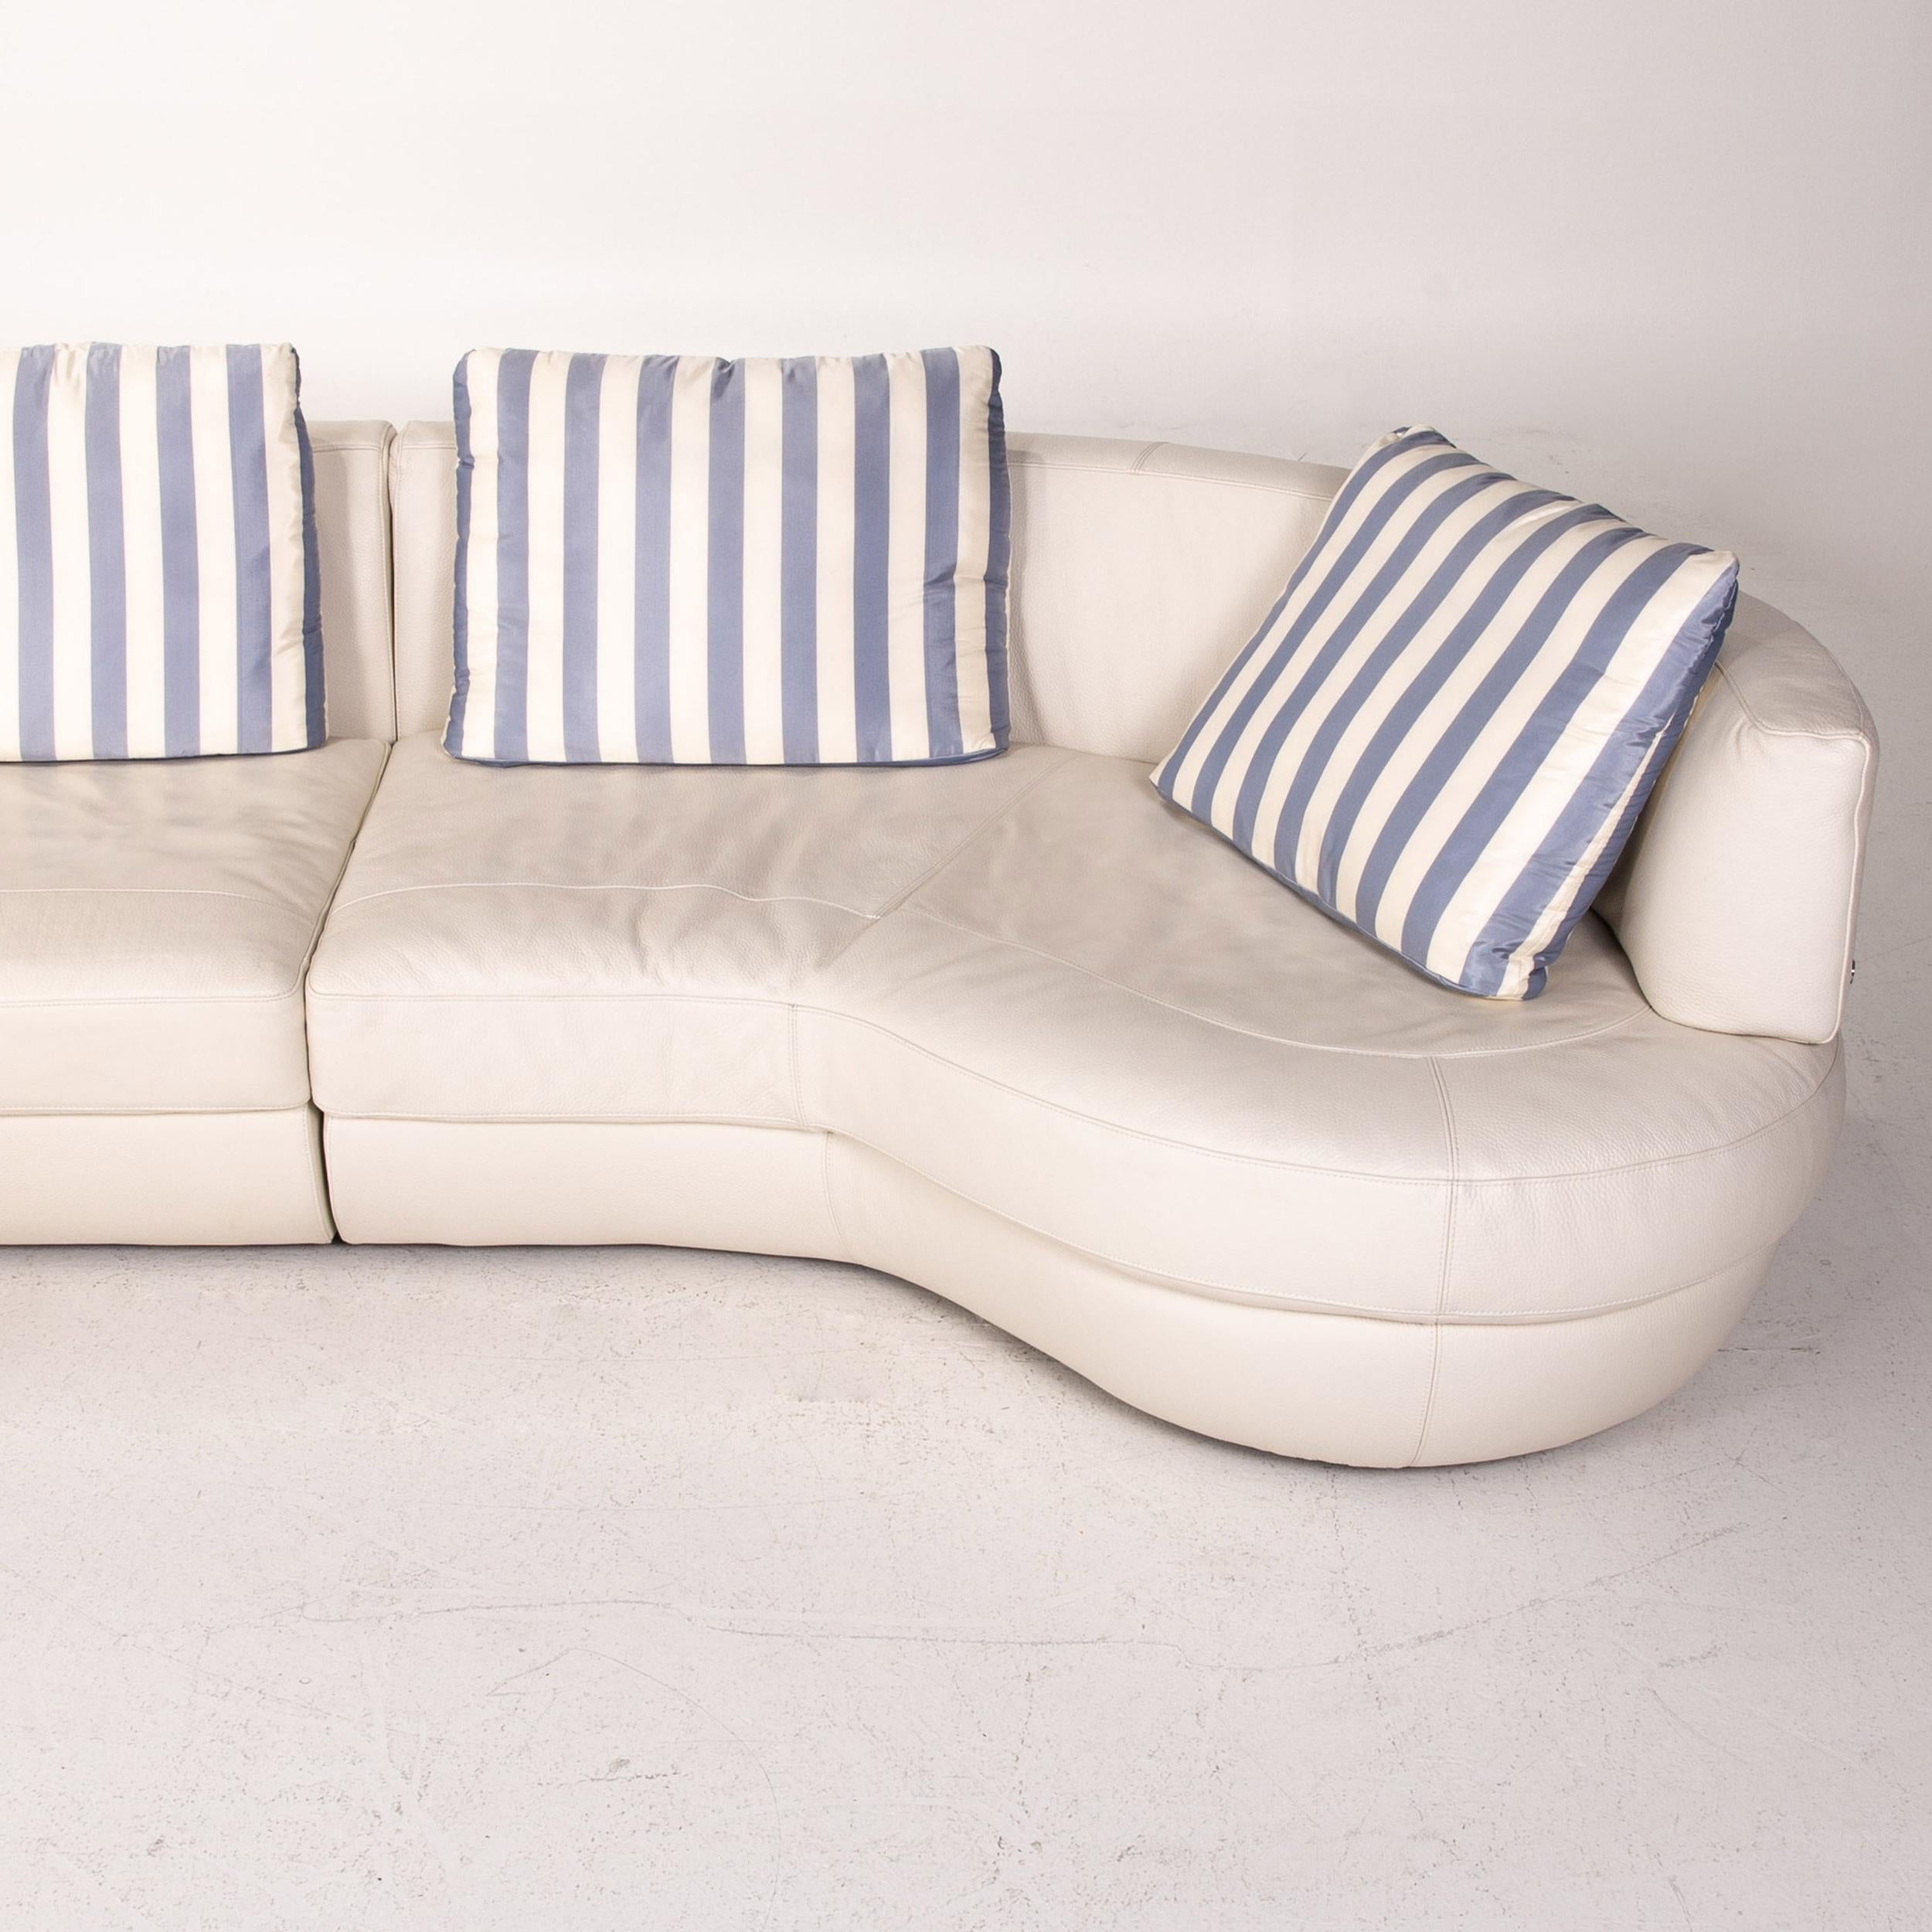 Contemporary Natuzzi Leather Corner Sofa White Sofa Couch